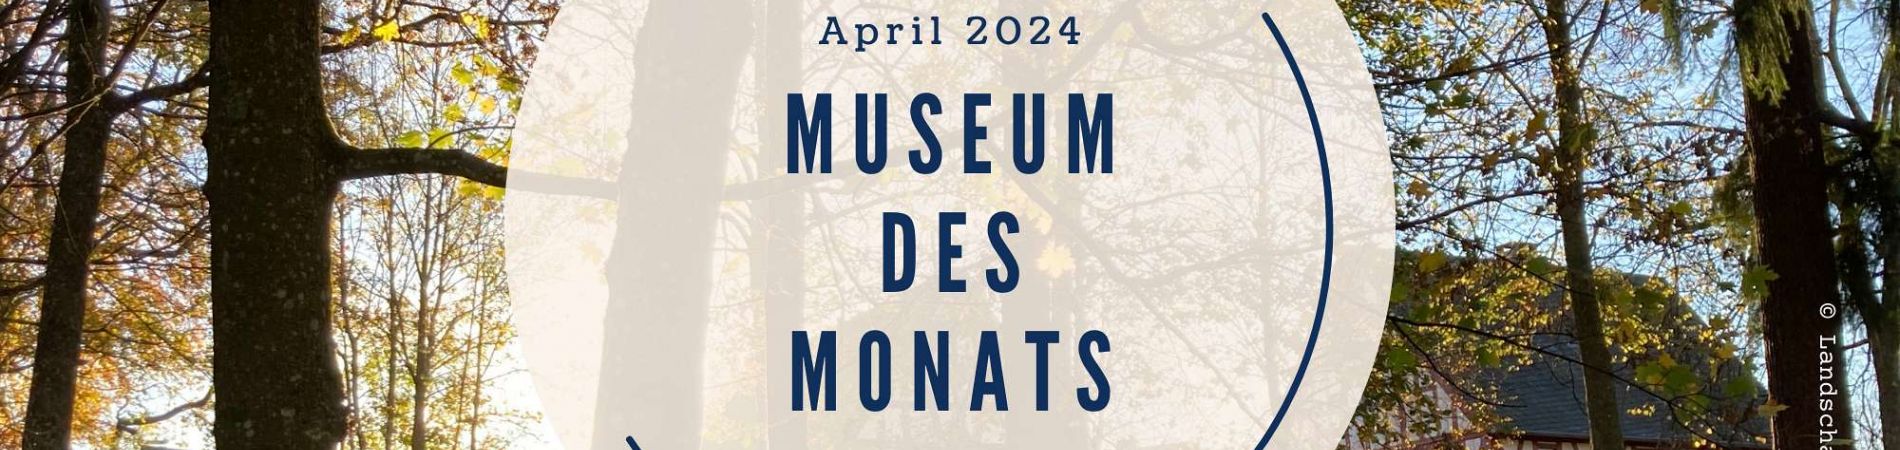 Das Landschaftsmuseum Westerwald ist Museum des Monats April